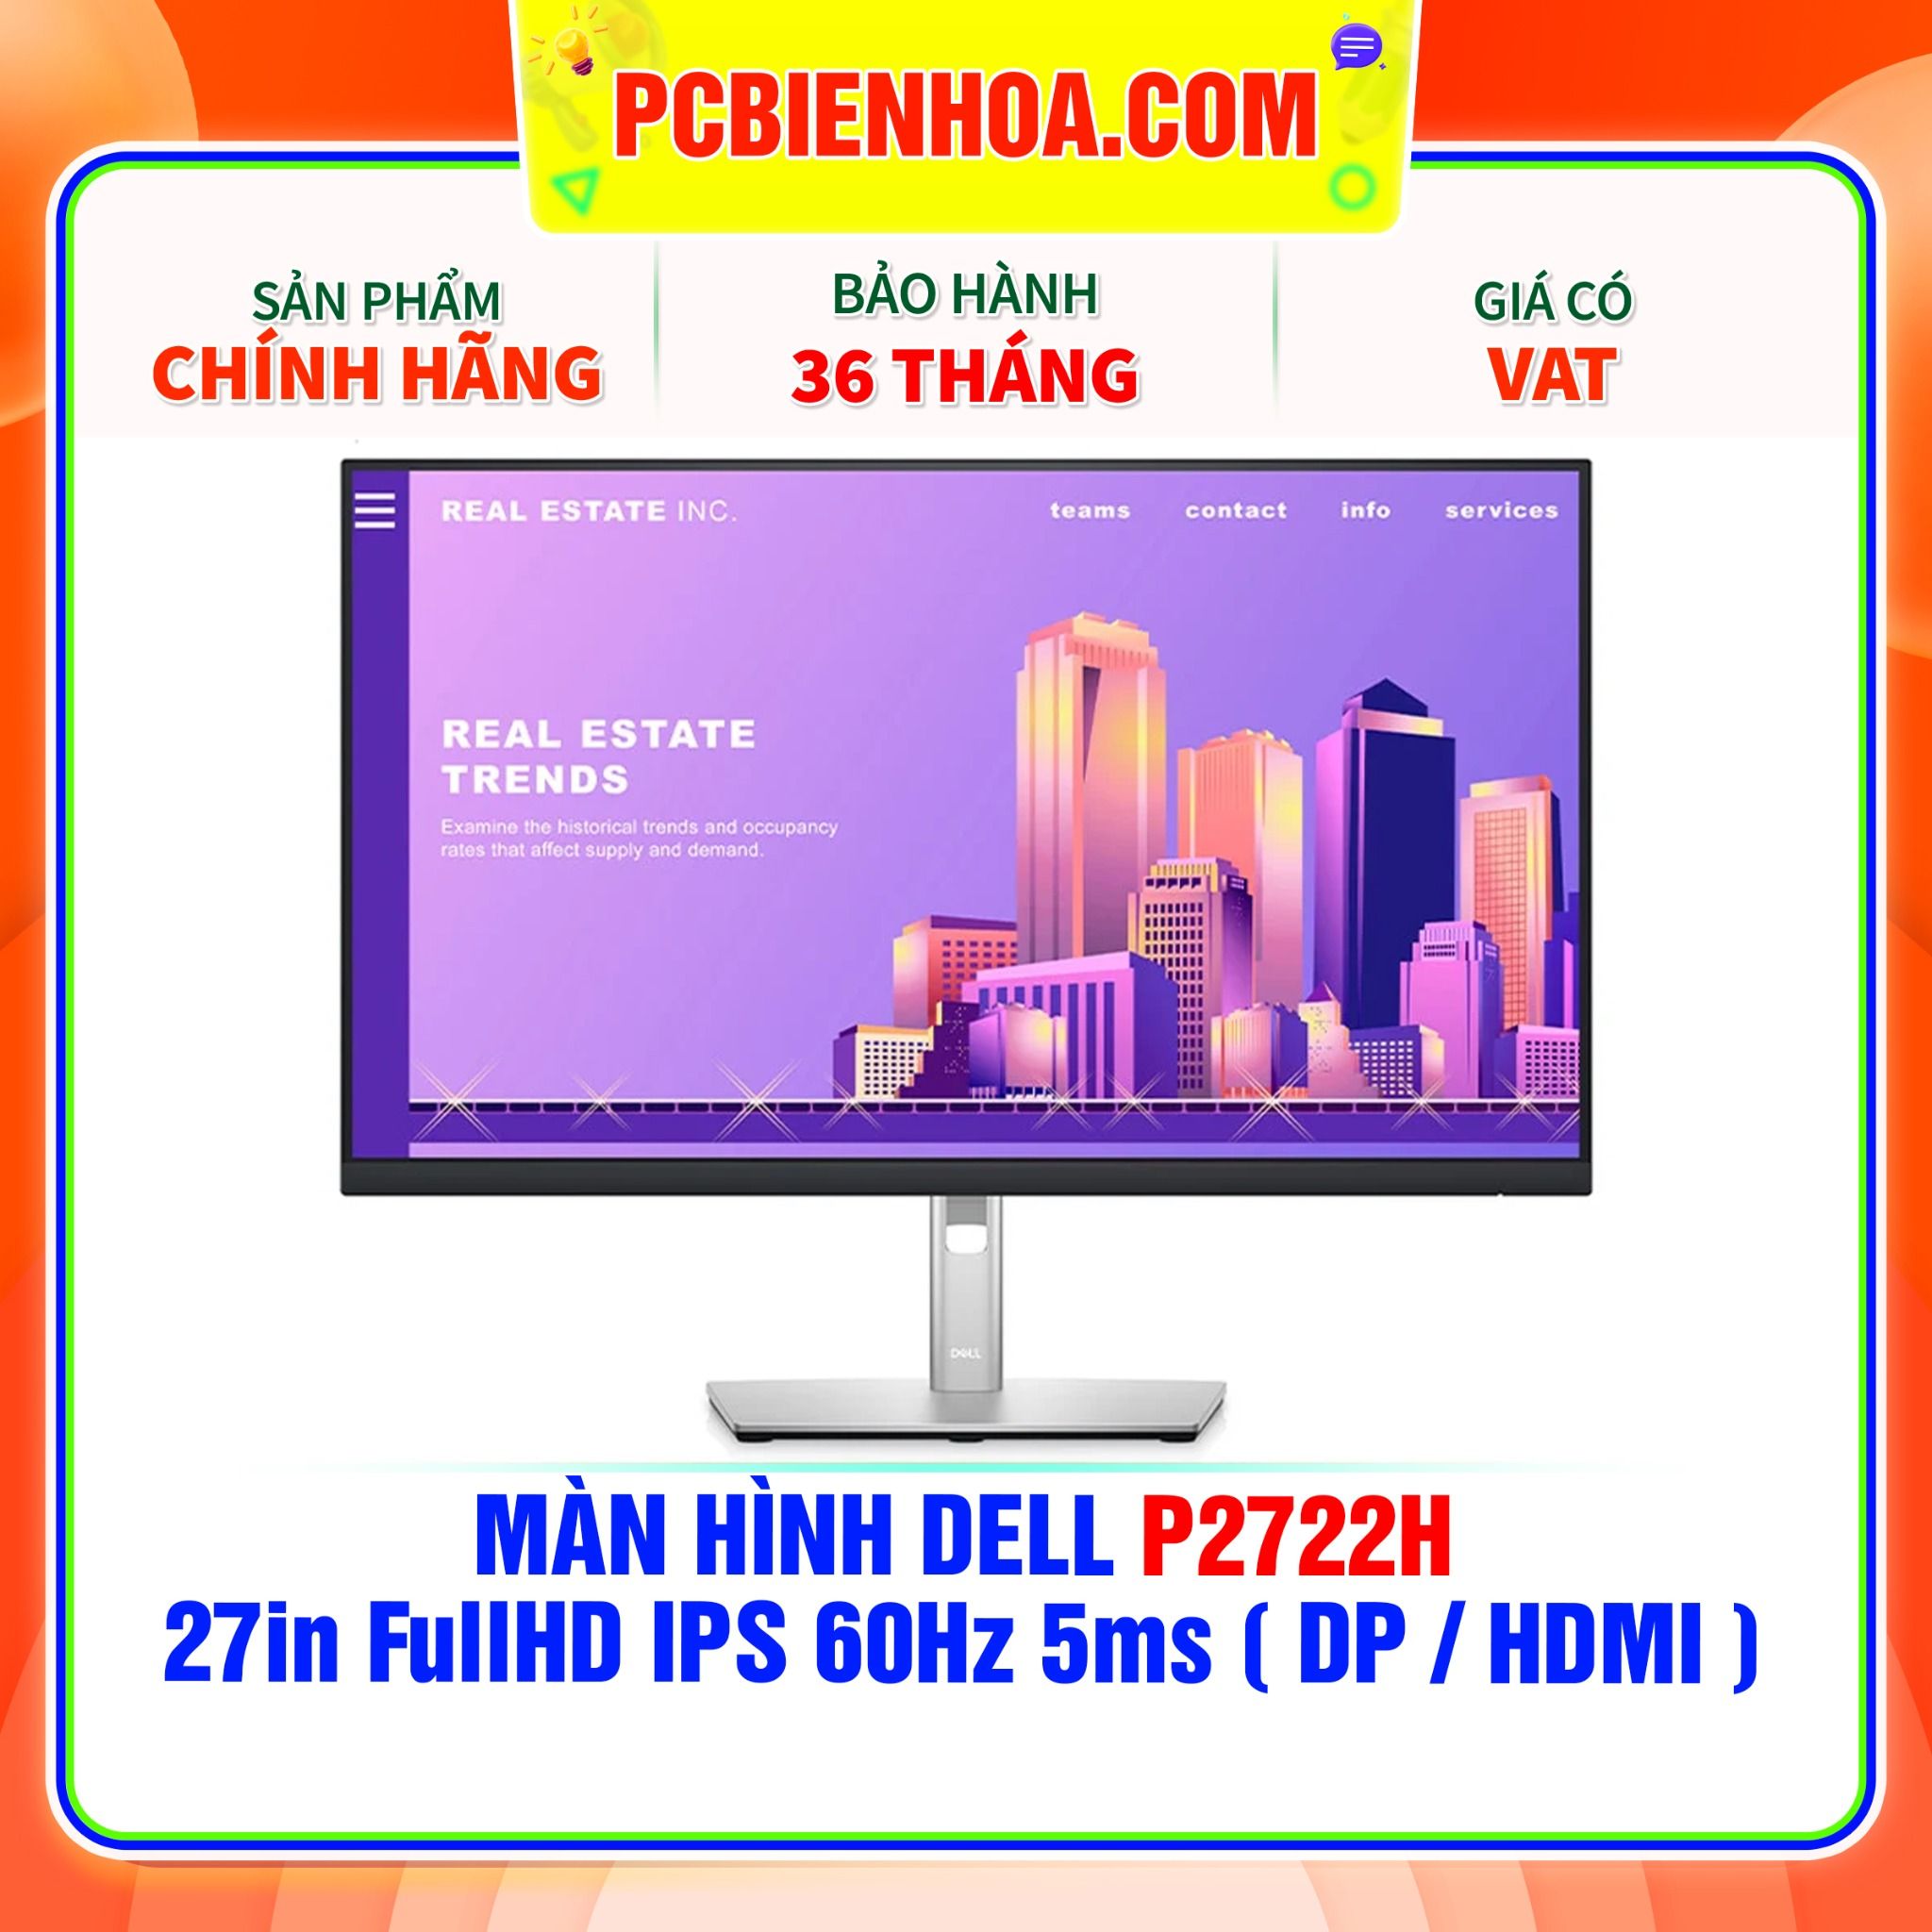  MÀN HÌNH DELL P2722H 27in FullHD IPS 60Hz 5ms ( DP / HDMI ) 